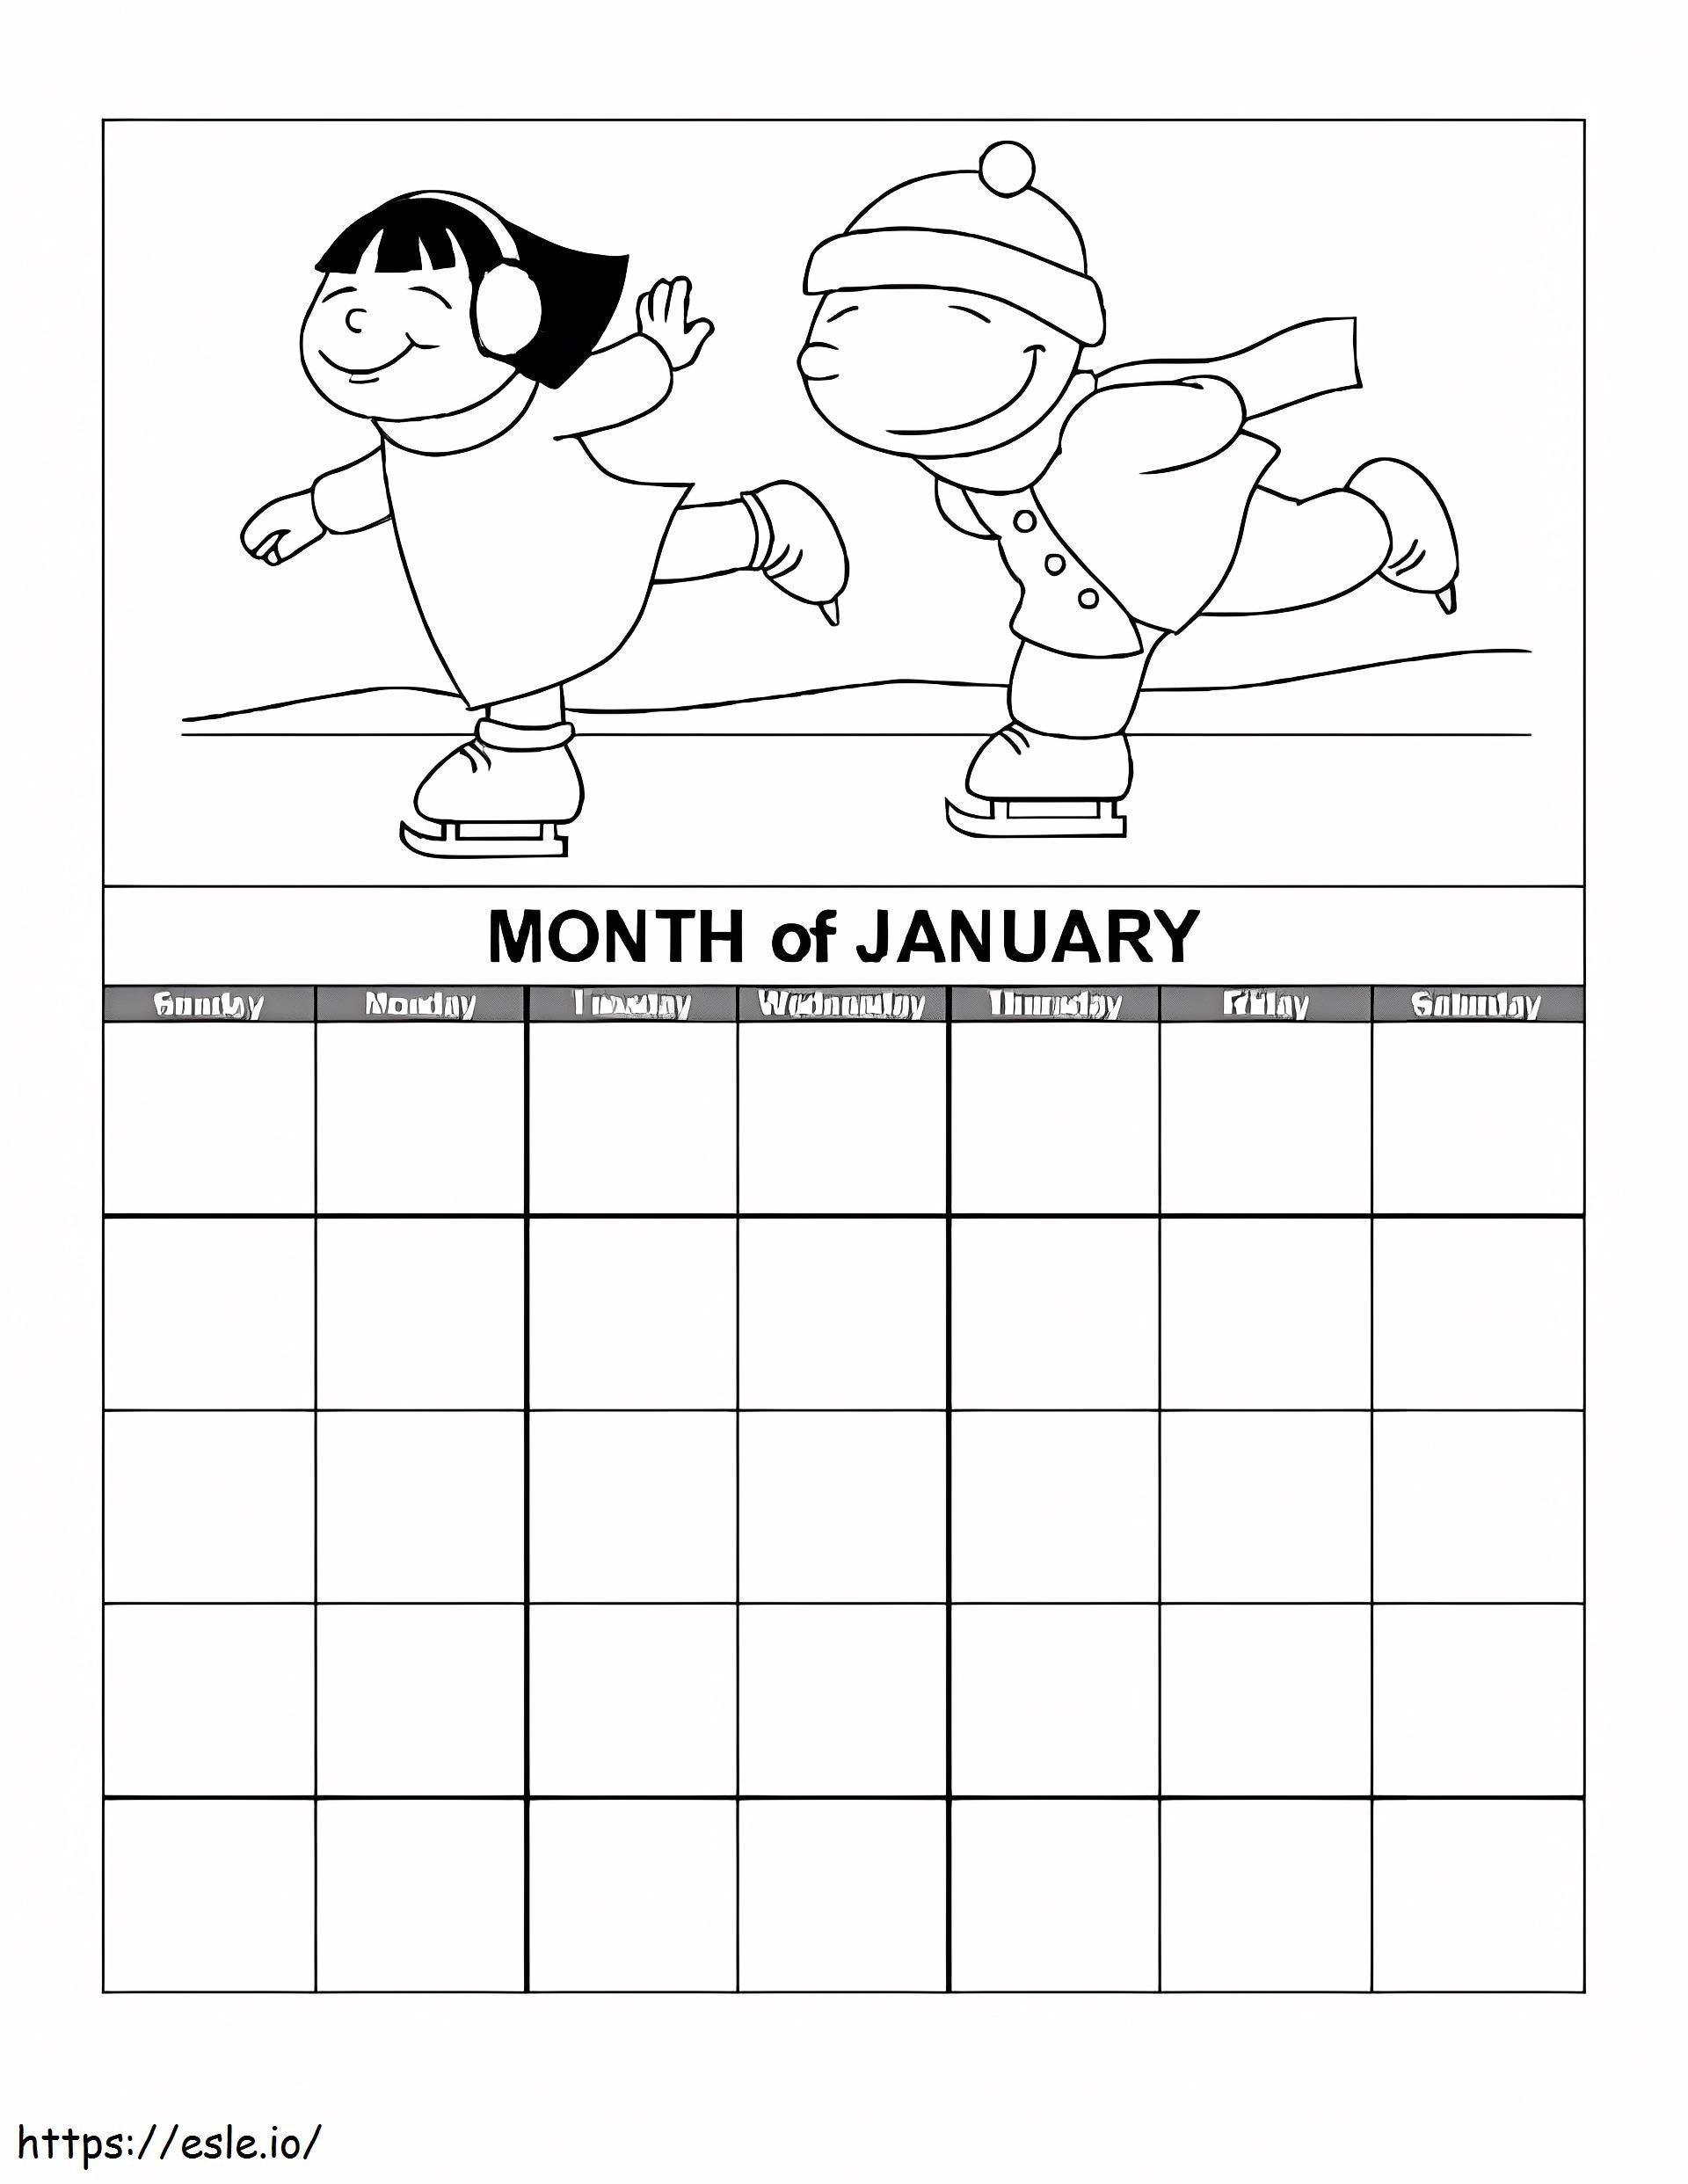 Monatskalender Januar ausmalbilder